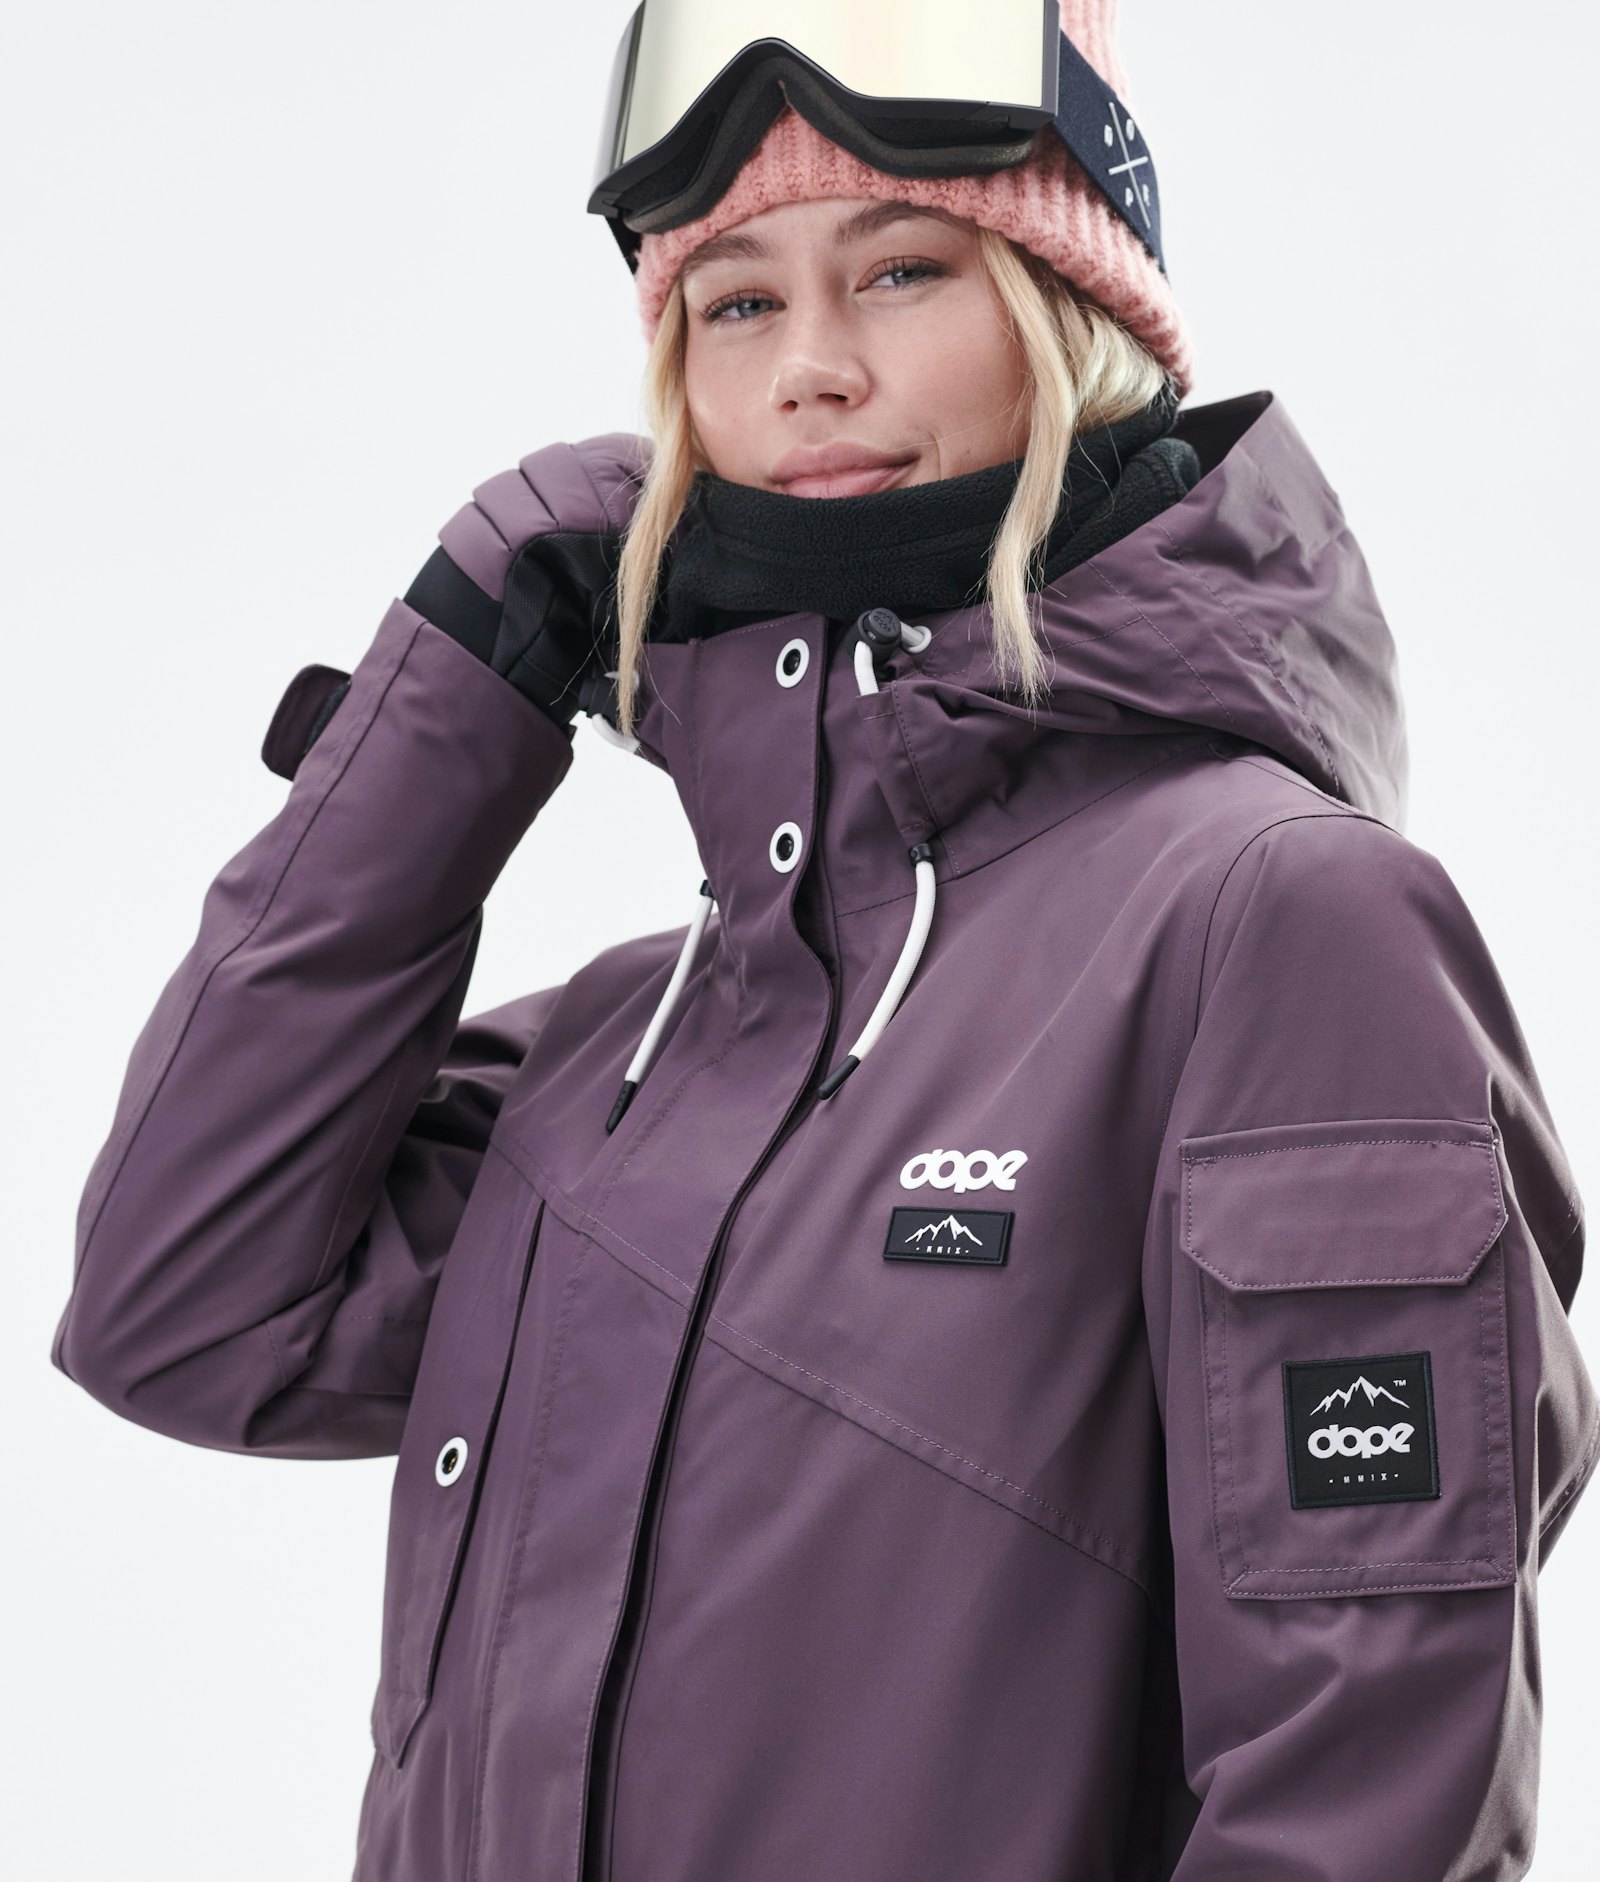 Adept W 2020 Snowboardjacke Damen Faded Grape